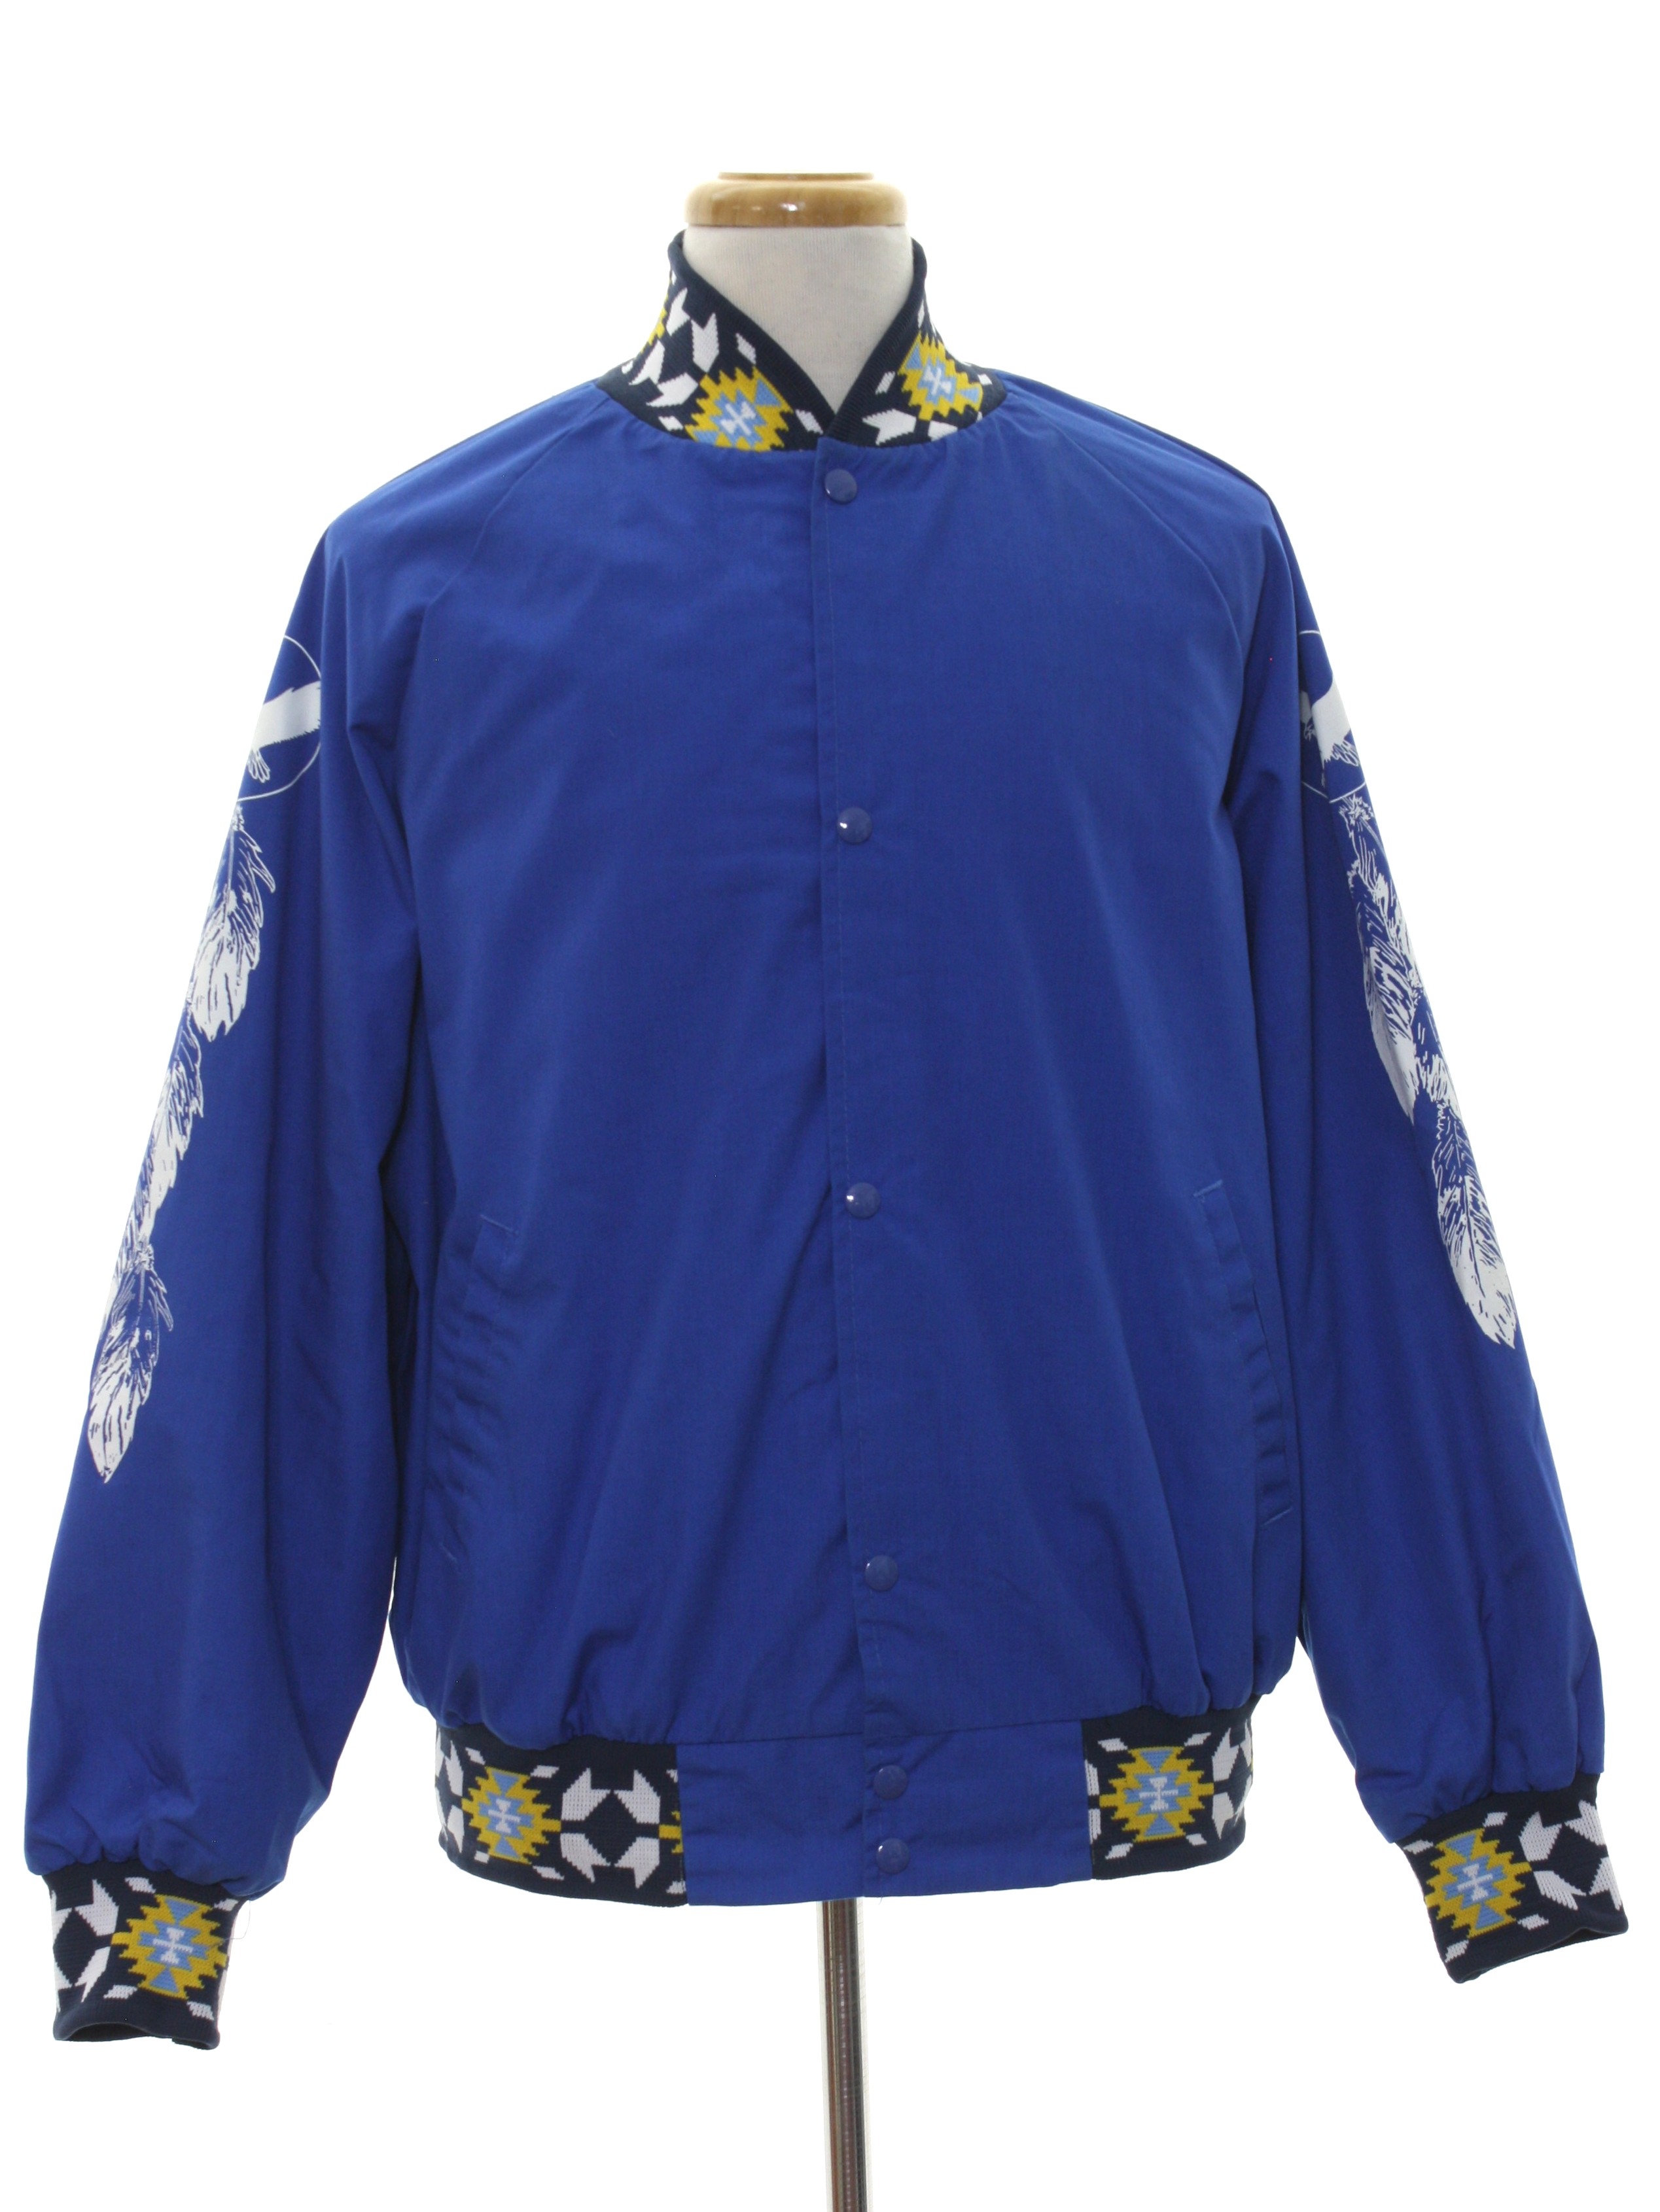 royal blue jordan jacket